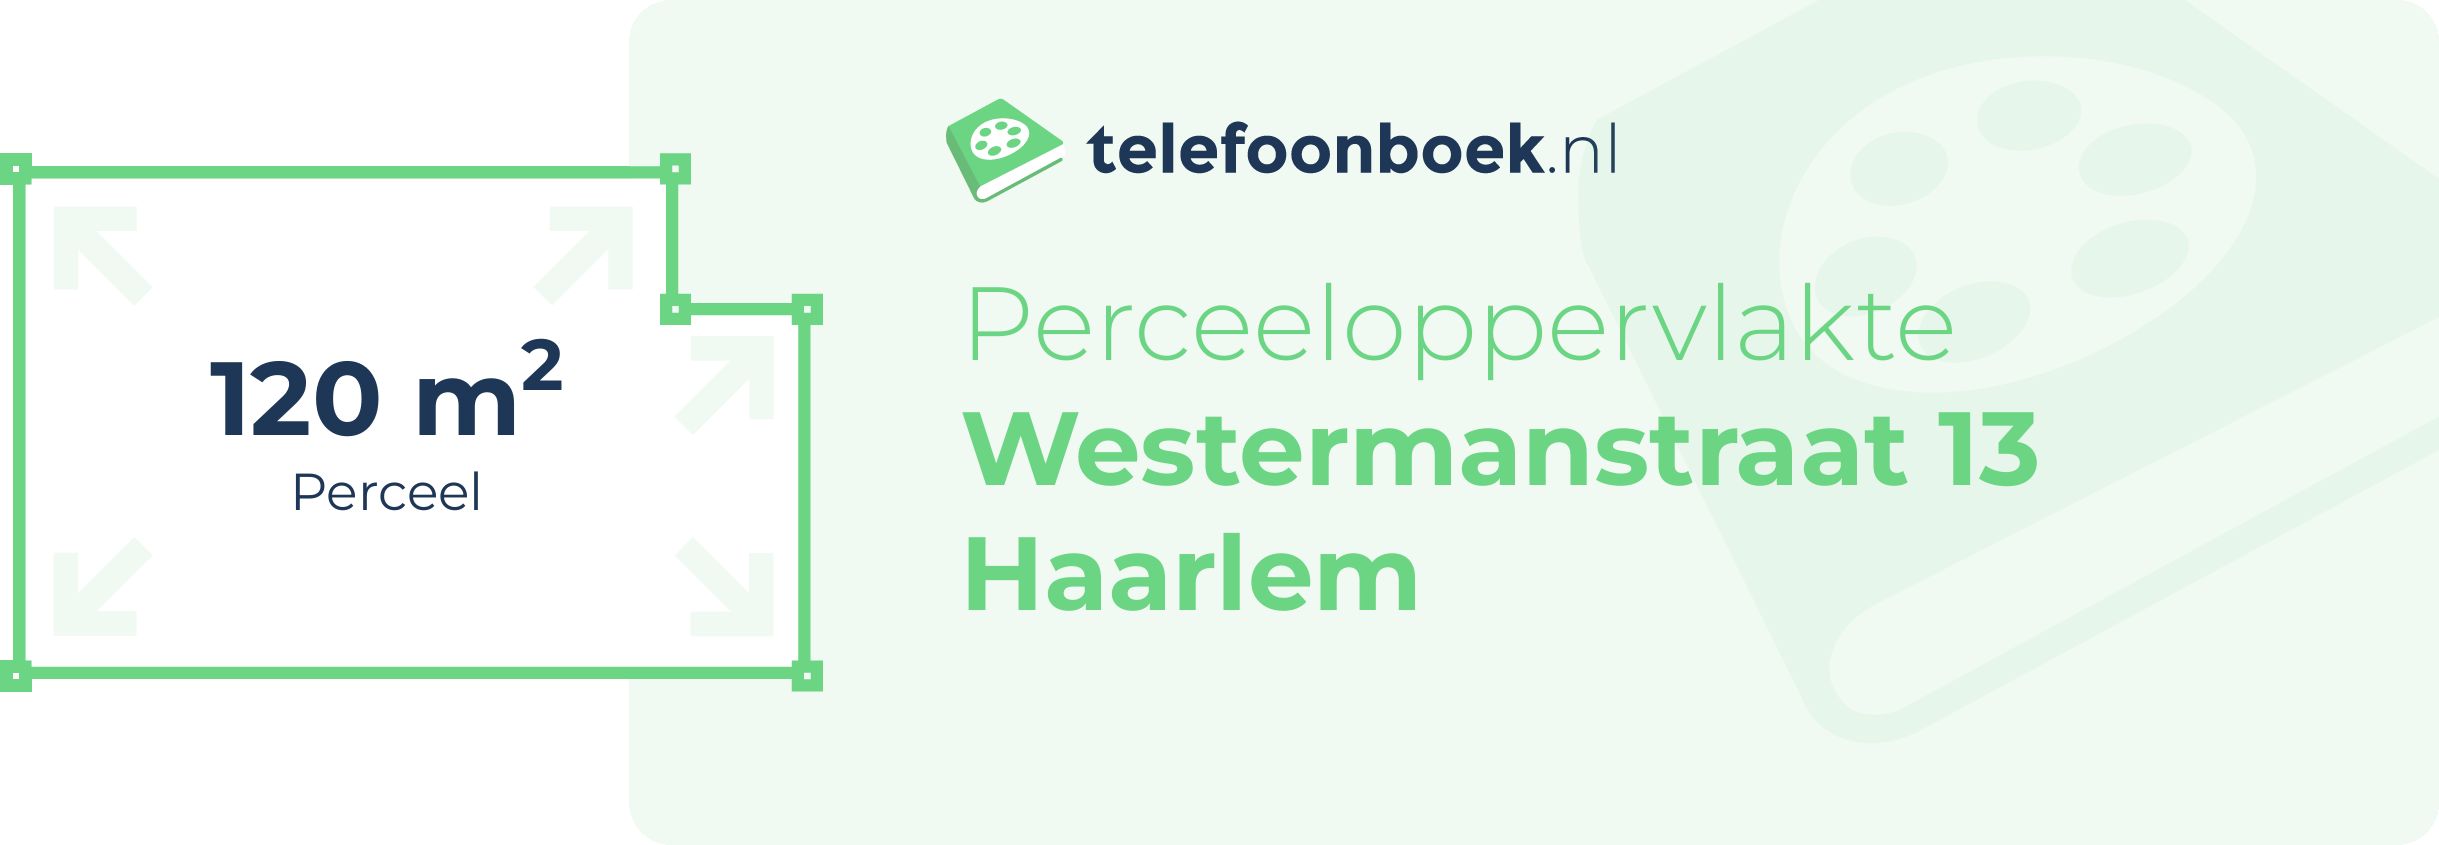 Perceeloppervlakte Westermanstraat 13 Haarlem